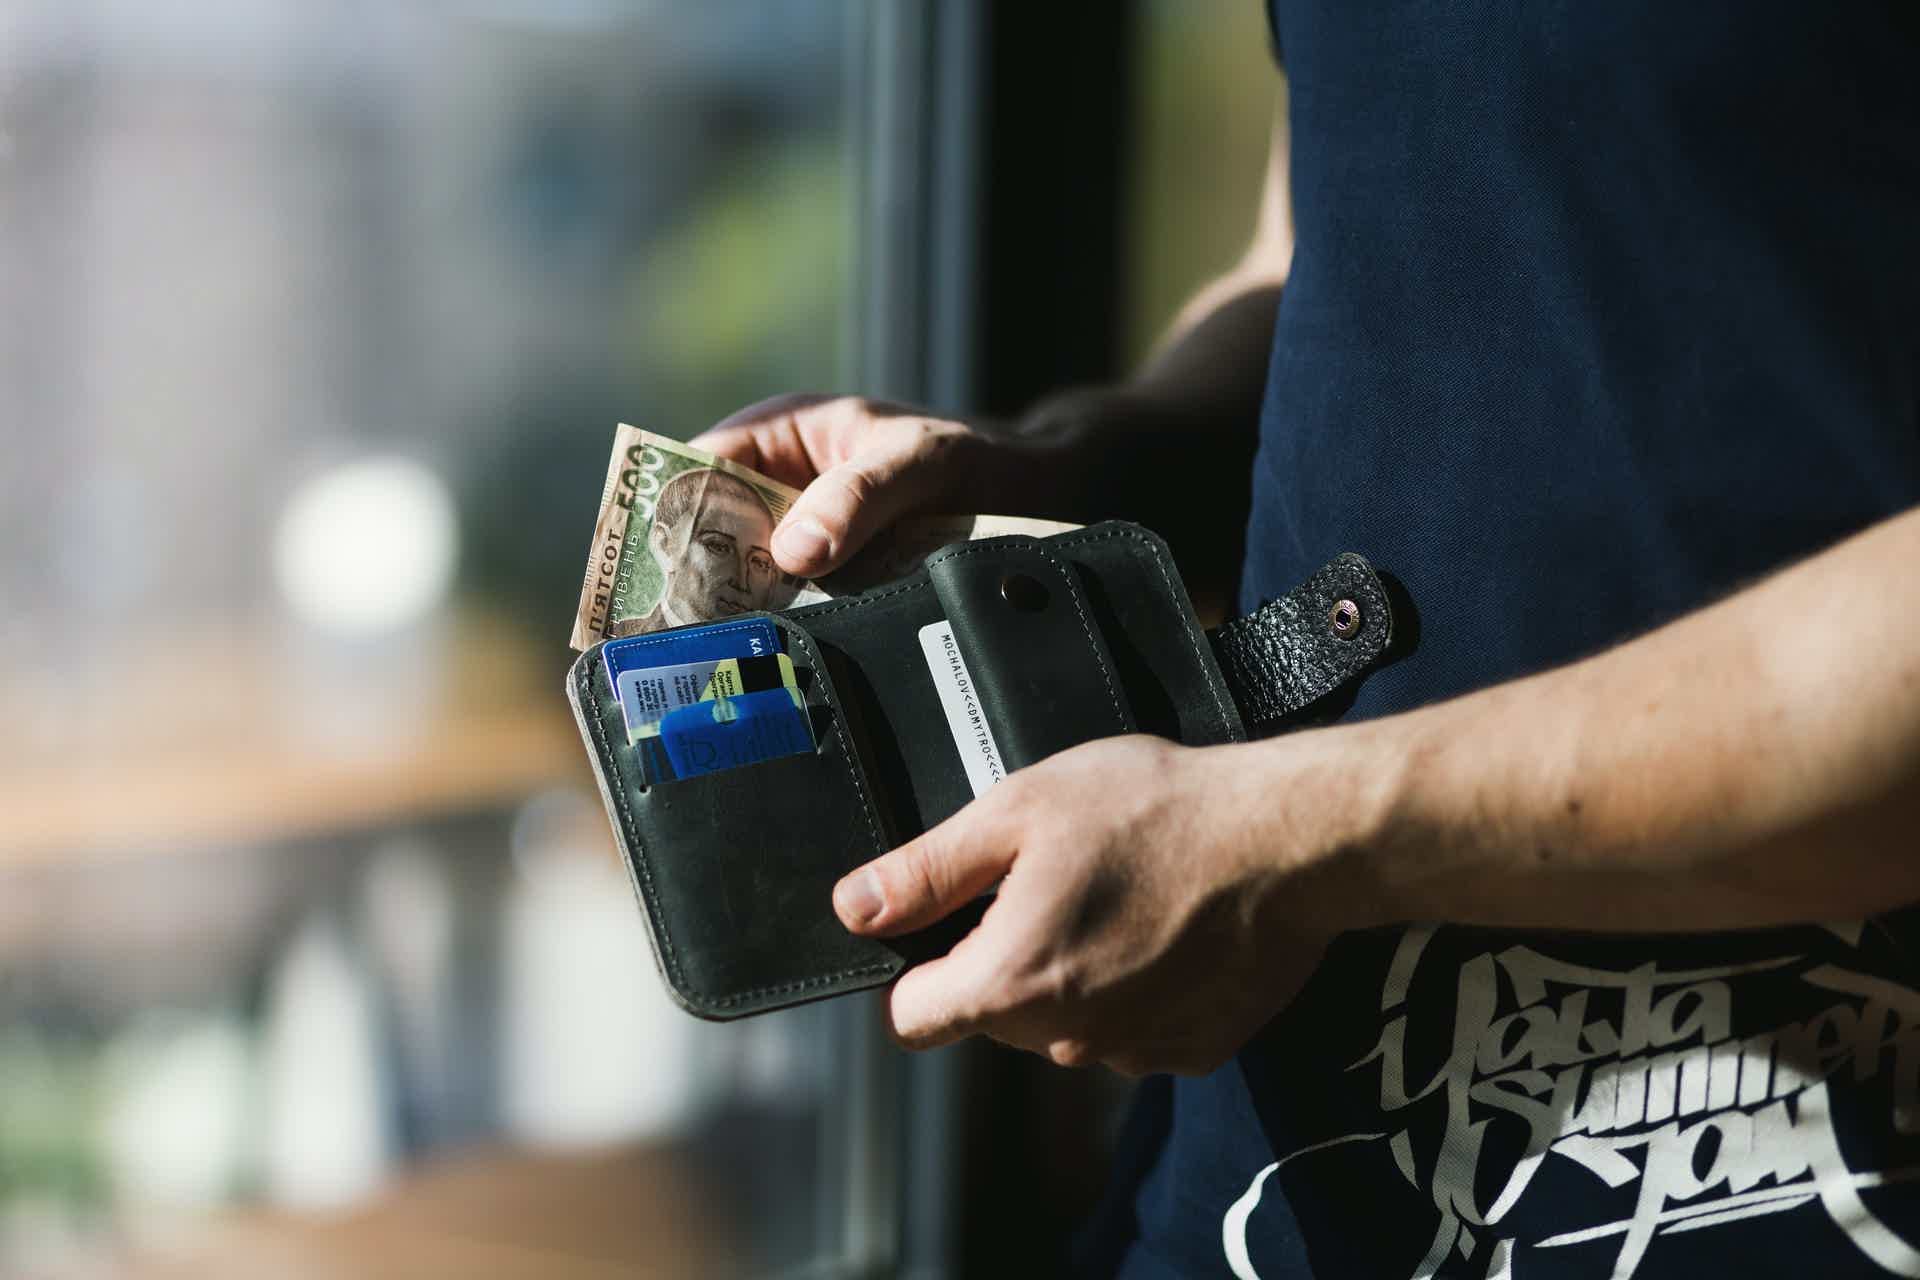 Tenha um limite de gastos para o cartão de crédito. Foto: Pexels / Evg Culture